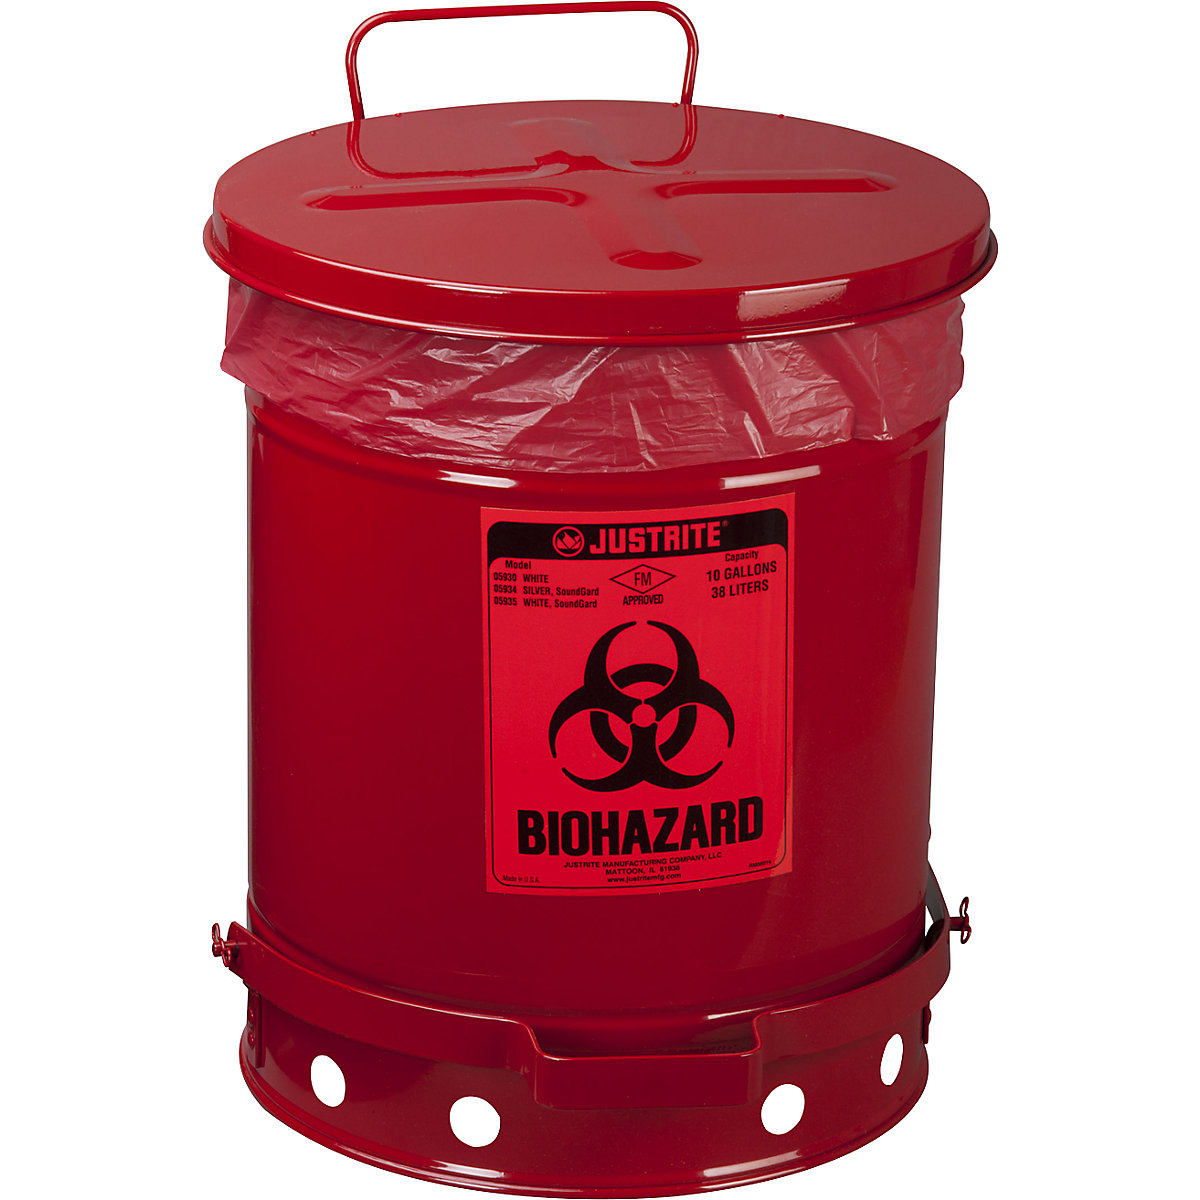 Sigurnosni spremnik za zbrinjavanje od čeličnog lima za biološki opasan otpad - Justrite